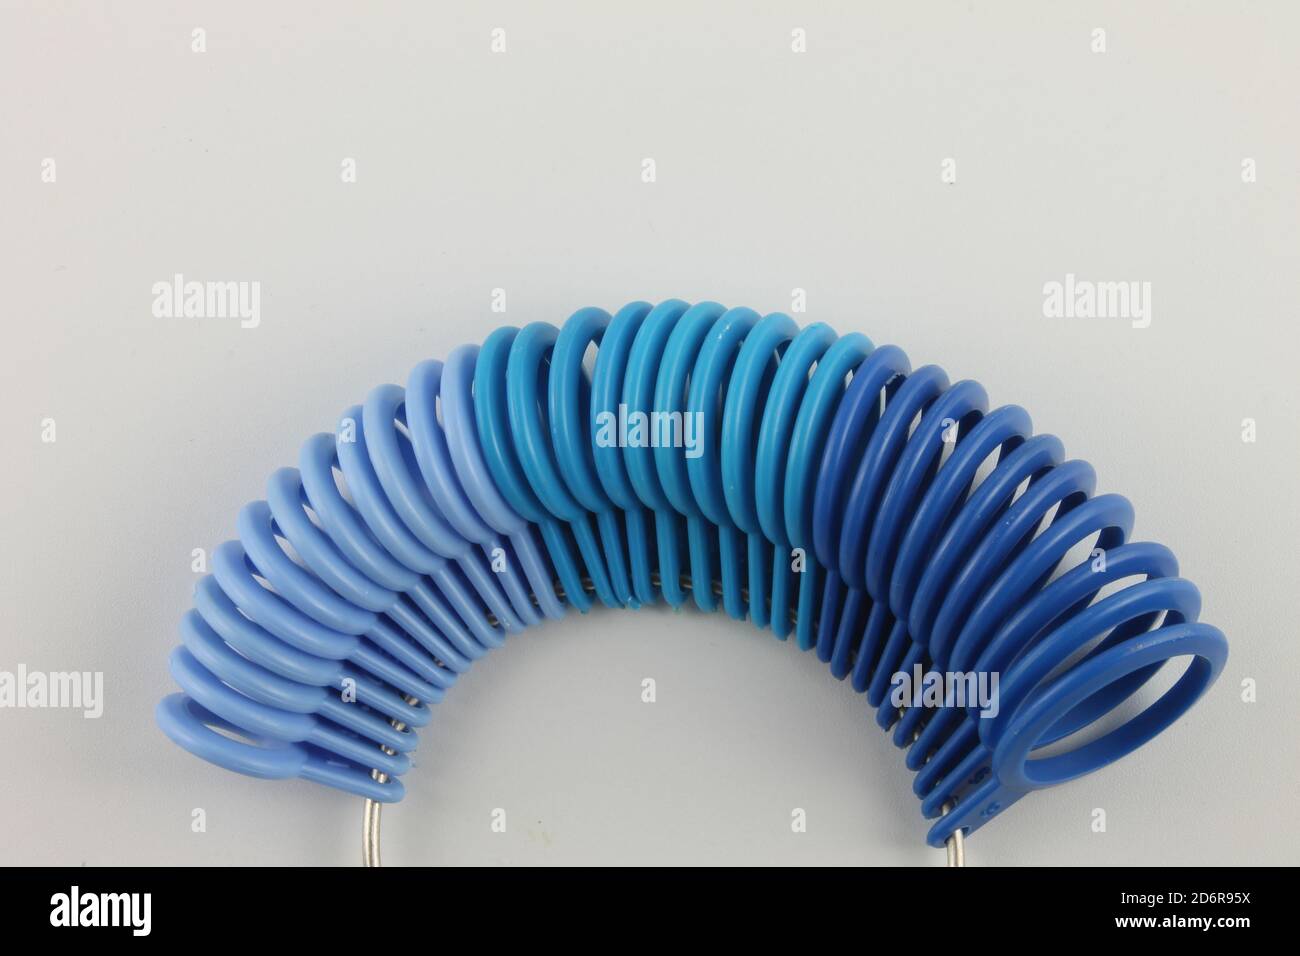 Calibro ad anello in tonalità blu, isolato su sfondo bianco Foto Stock